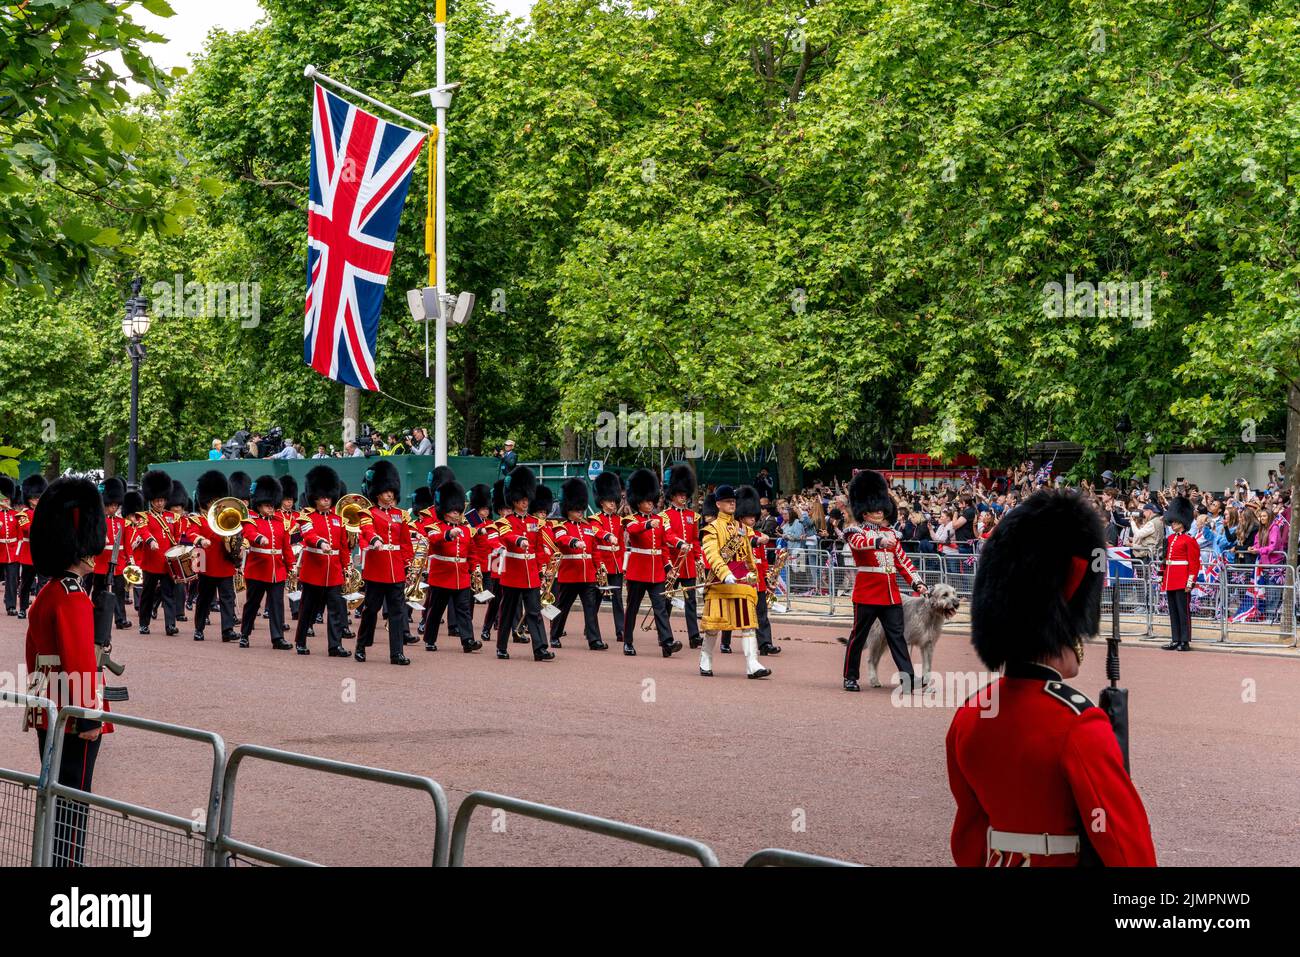 Les gardes irlandais du premier bataillon et la mascotte de leur chien de chasse irlandais « Seamus » prennent part à la parade de l'anniversaire de la reine, Londres, Royaume-Uni. Banque D'Images